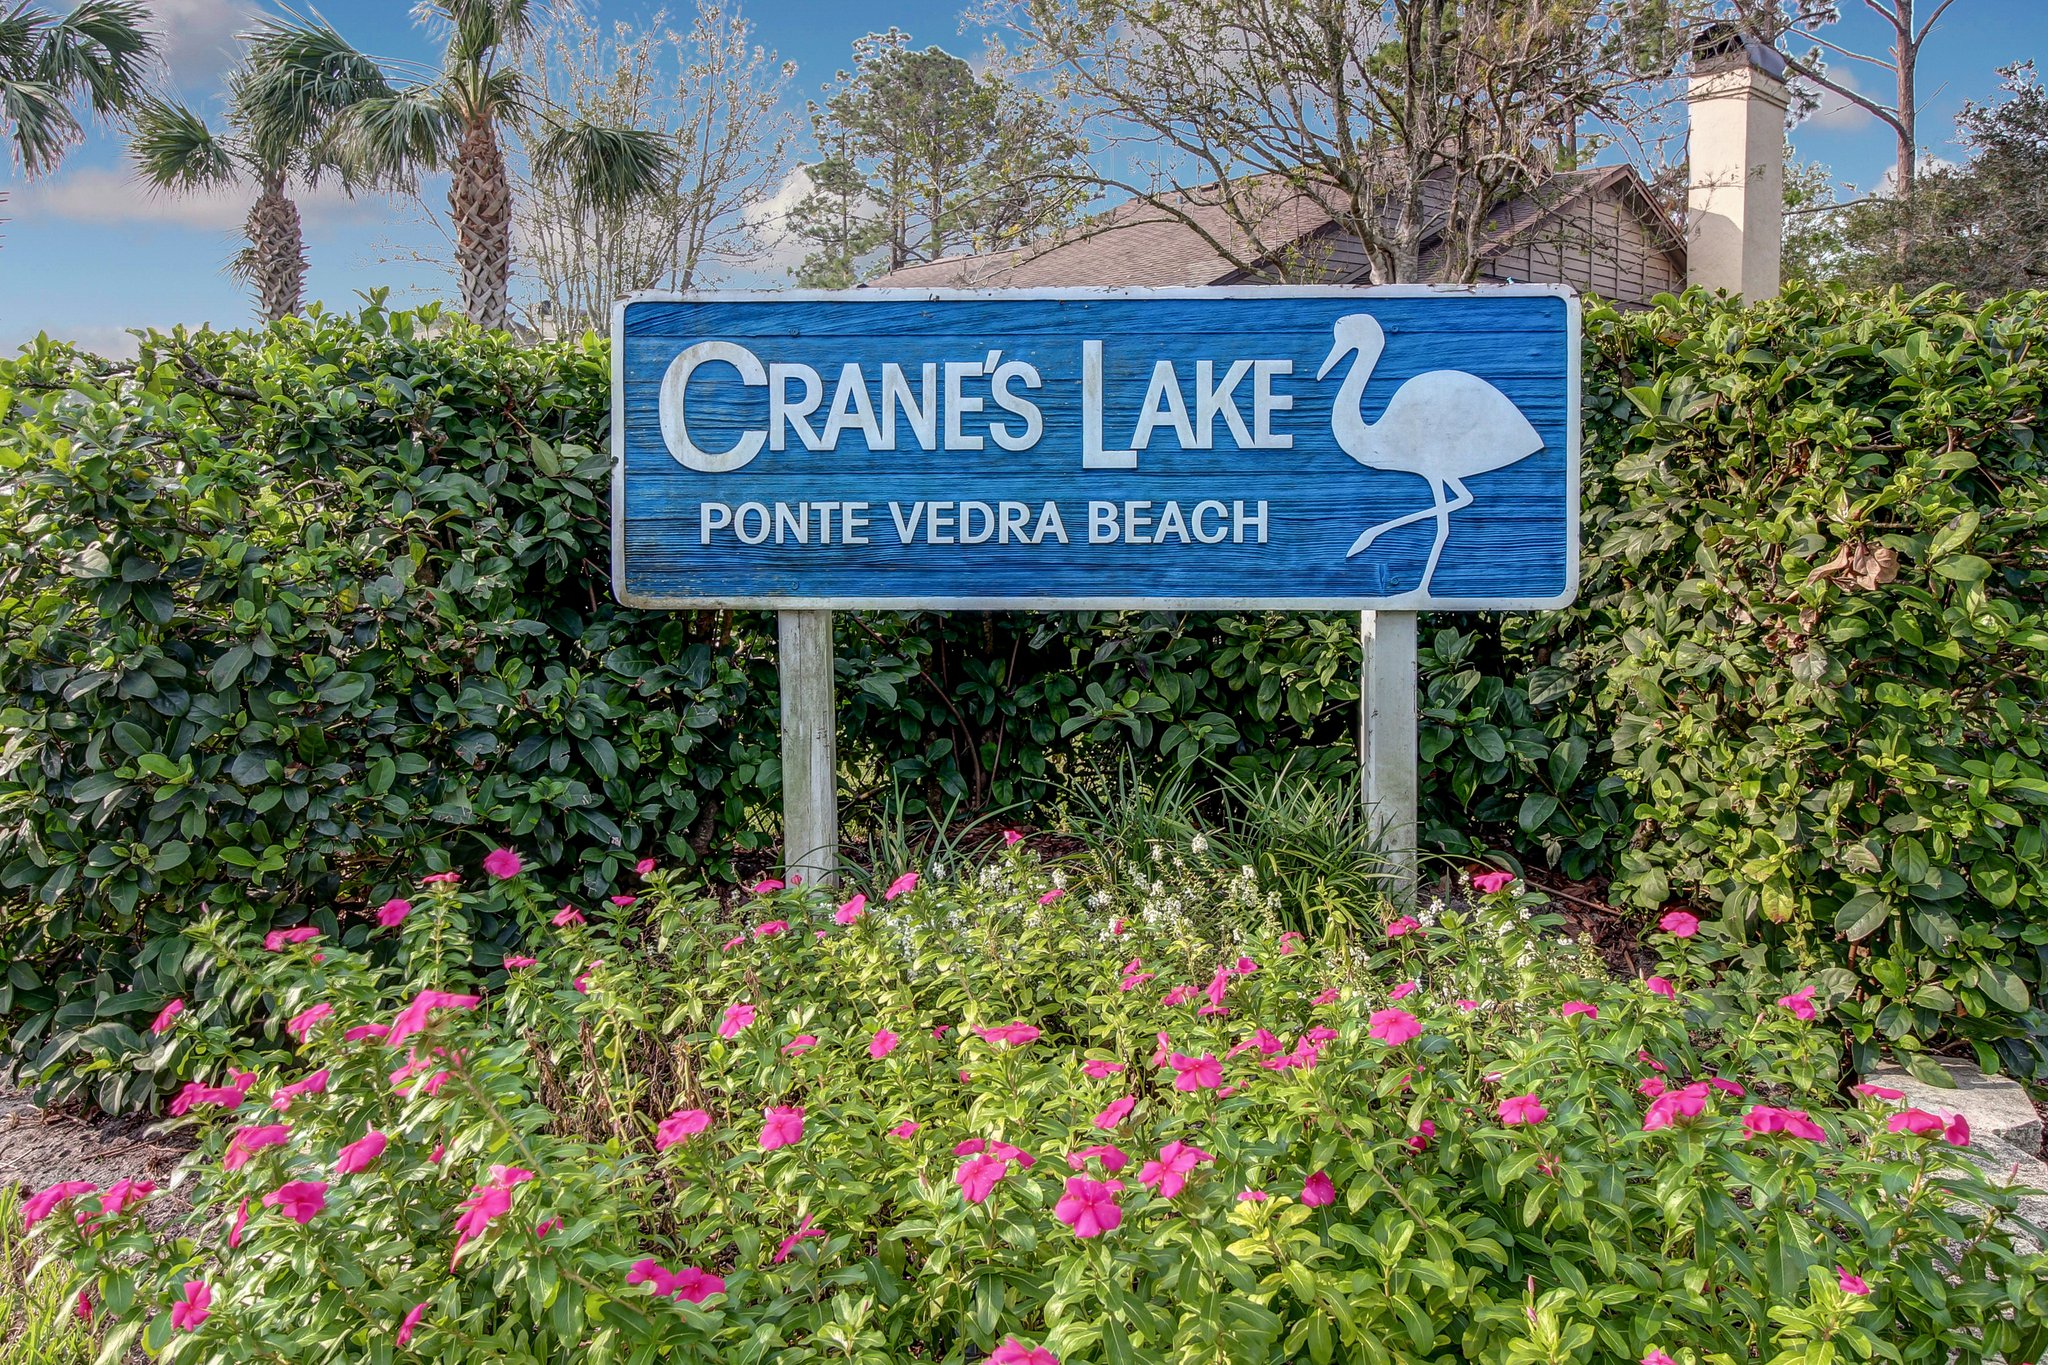 Crane's Lake